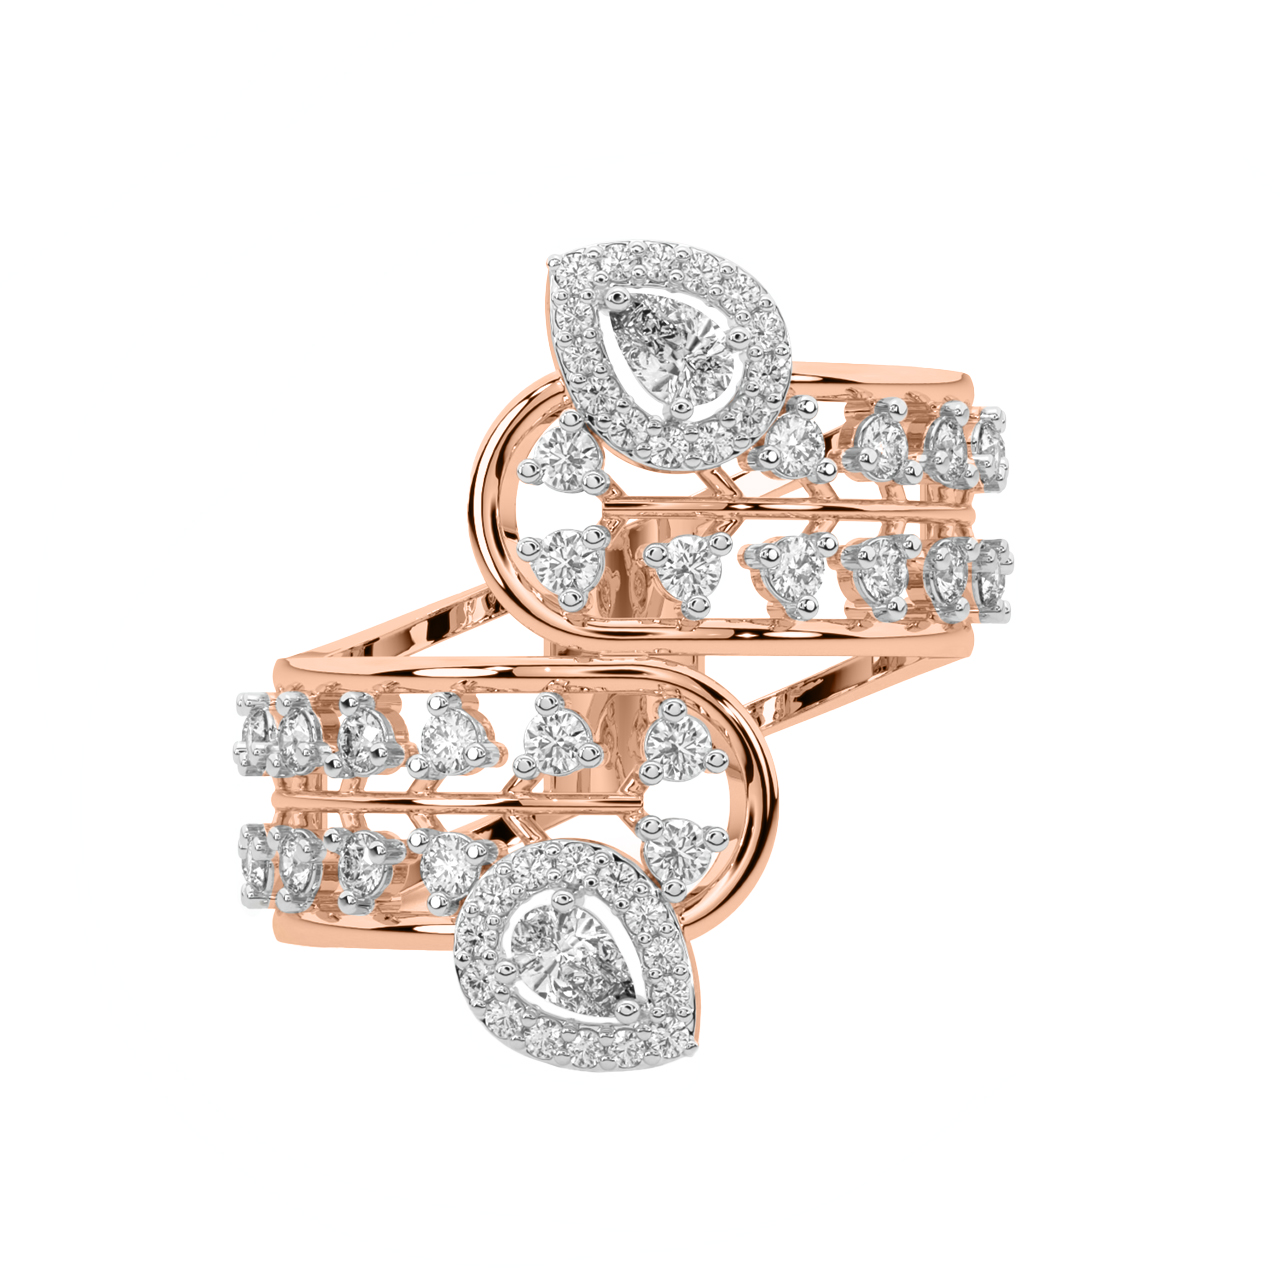 Shauna Round Diamond Engagement Ring